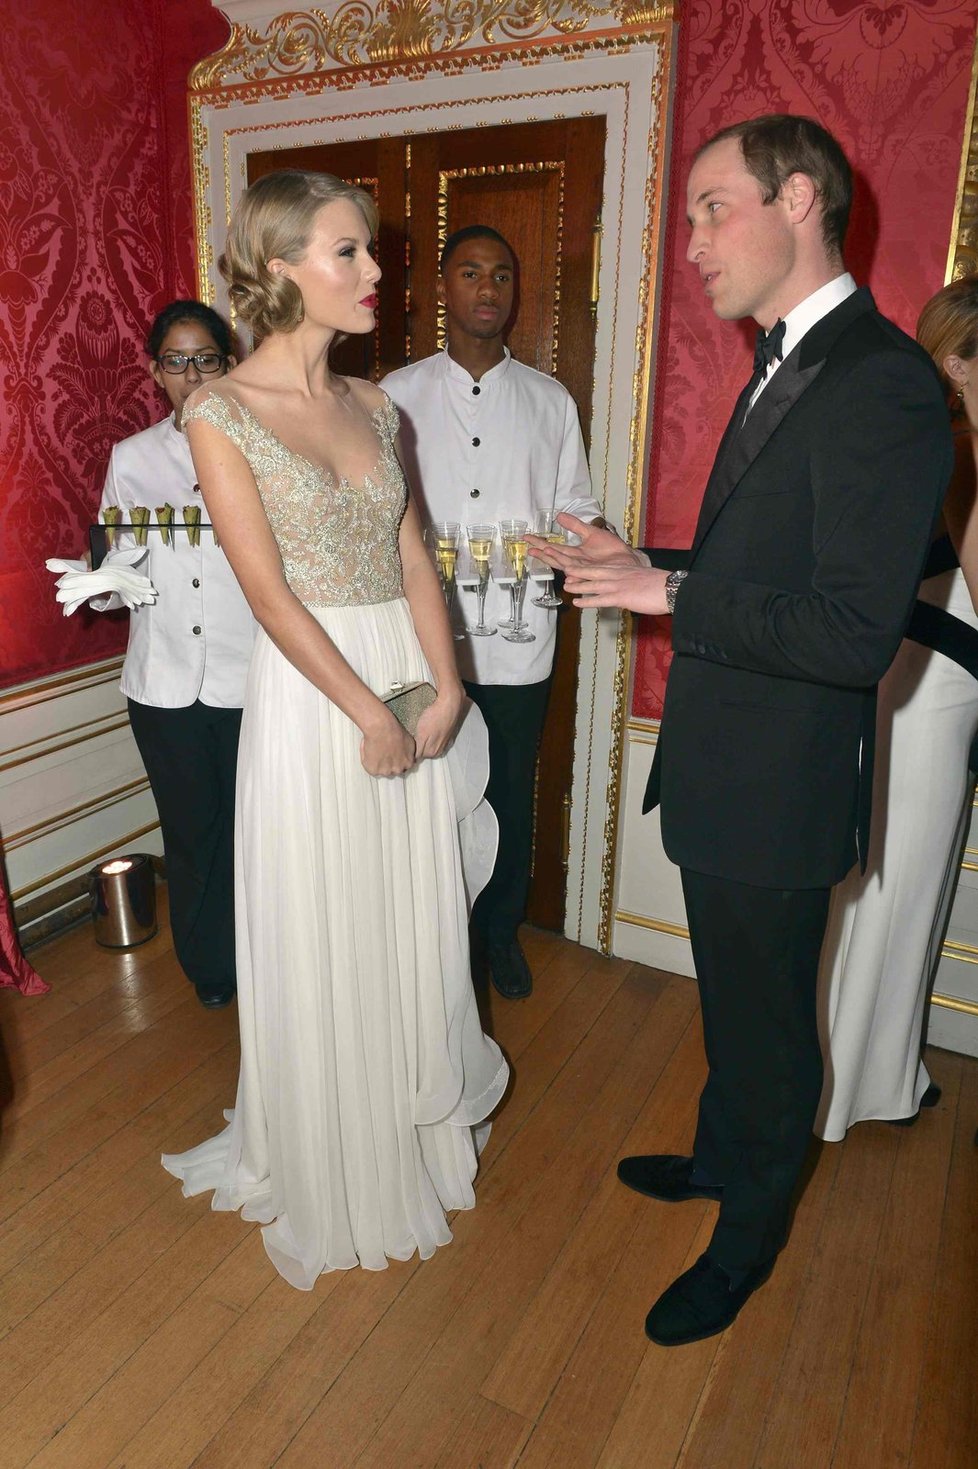 Taylor poprvé zpívala v Buckinghamském paláci a hned před britským princem.